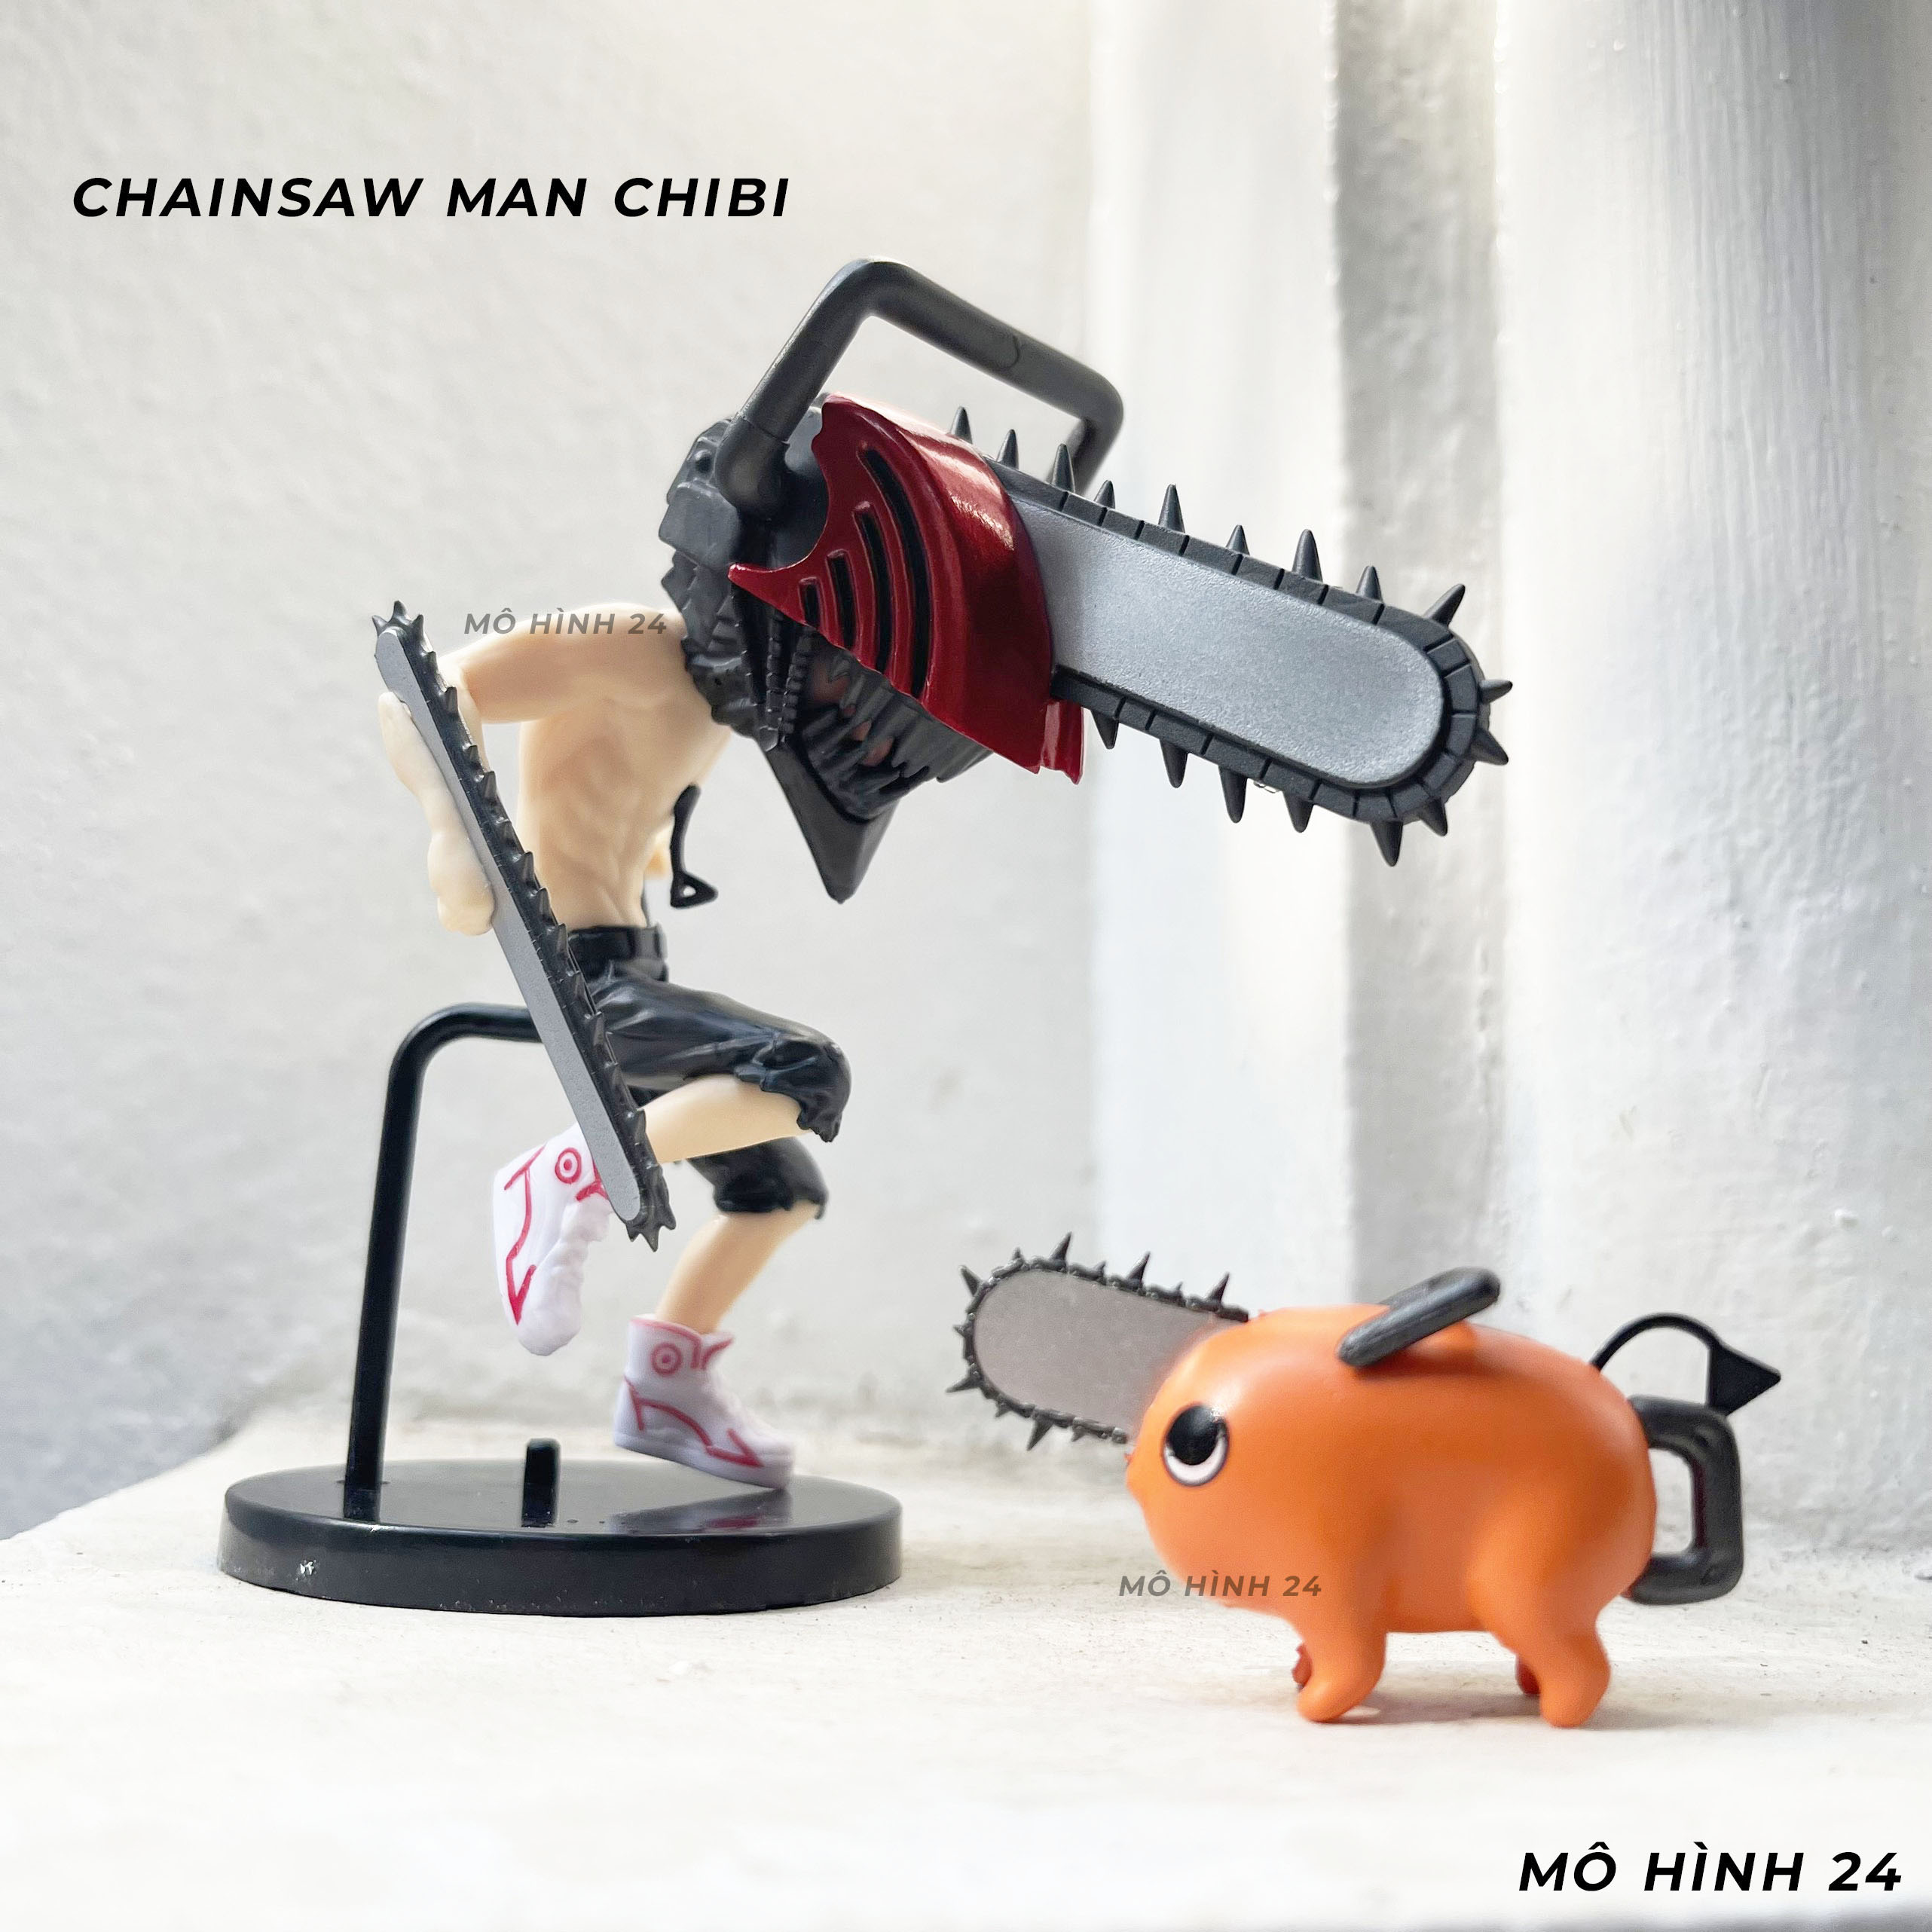 Chibi Denji: Thế giới chibi rộng lớn với nhiều nhân vật đáng yêu, trong đó có Chibi Denji. Truyện tranh Chainsaw MAN đã tạo ra một thế giới giả tưởng đầy màu sắc và hấp dẫn chứa đầy các nhân vật chibi dễ thương. Hãy cùng xem hình ảnh về Chibi Denji và khám phá thế giới chibi đầy màu sắc này.